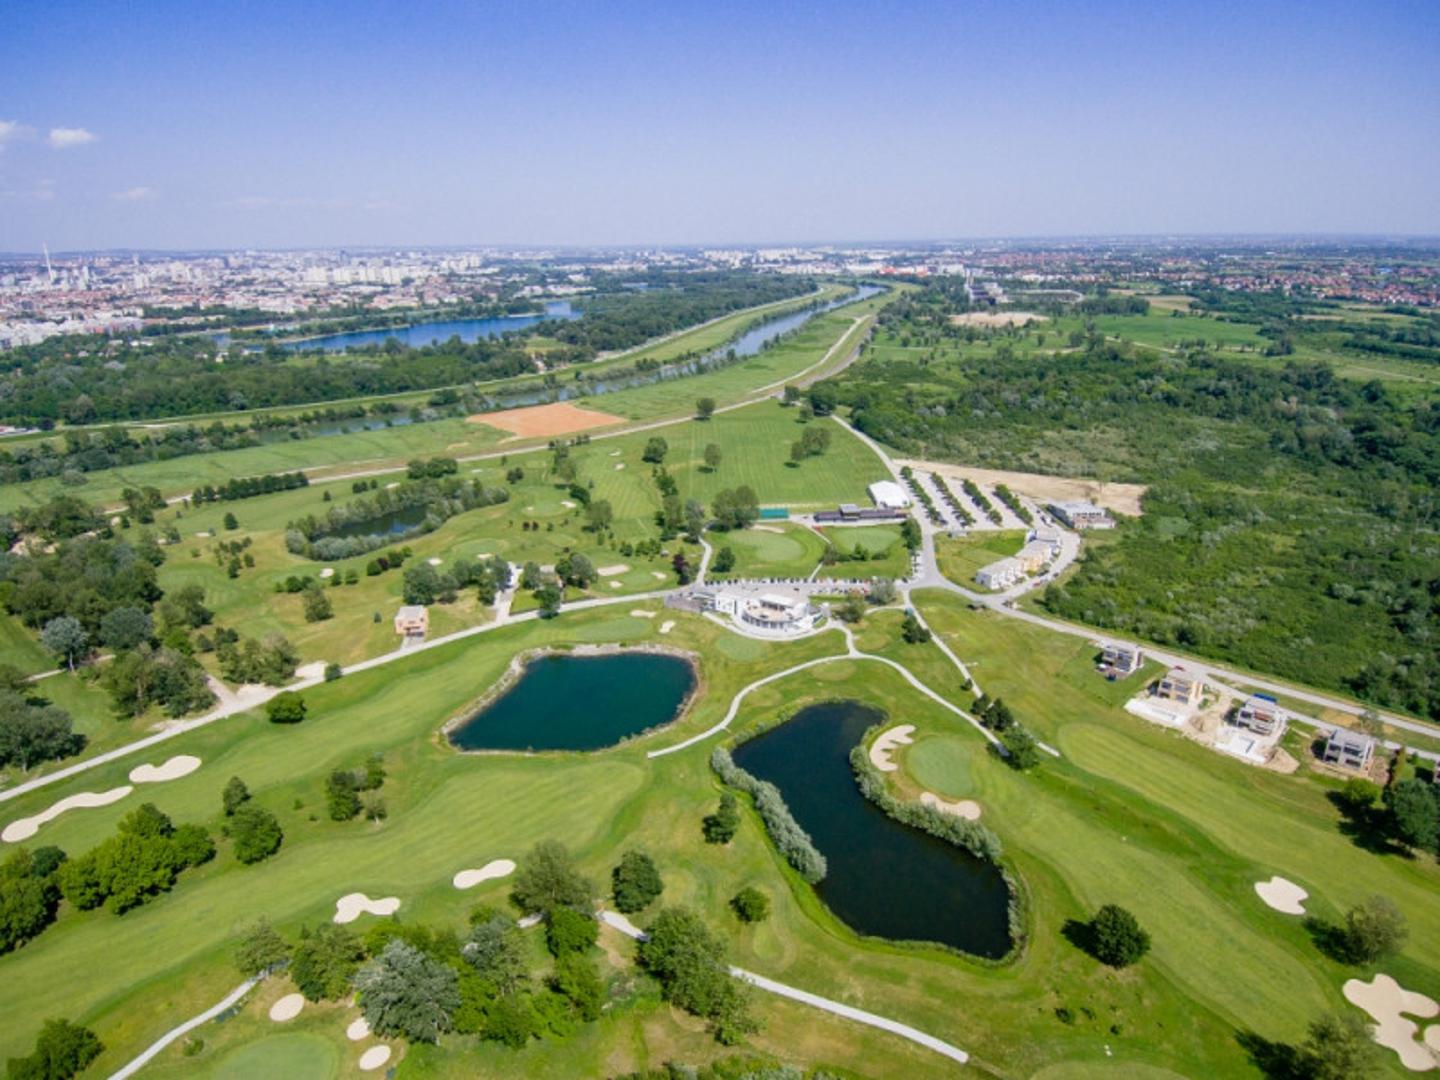 Visokokvalitetan i bogato opremljen Riverside Golf Zagreb zaslužan je za popularizaciju ovog sporta u metropoli